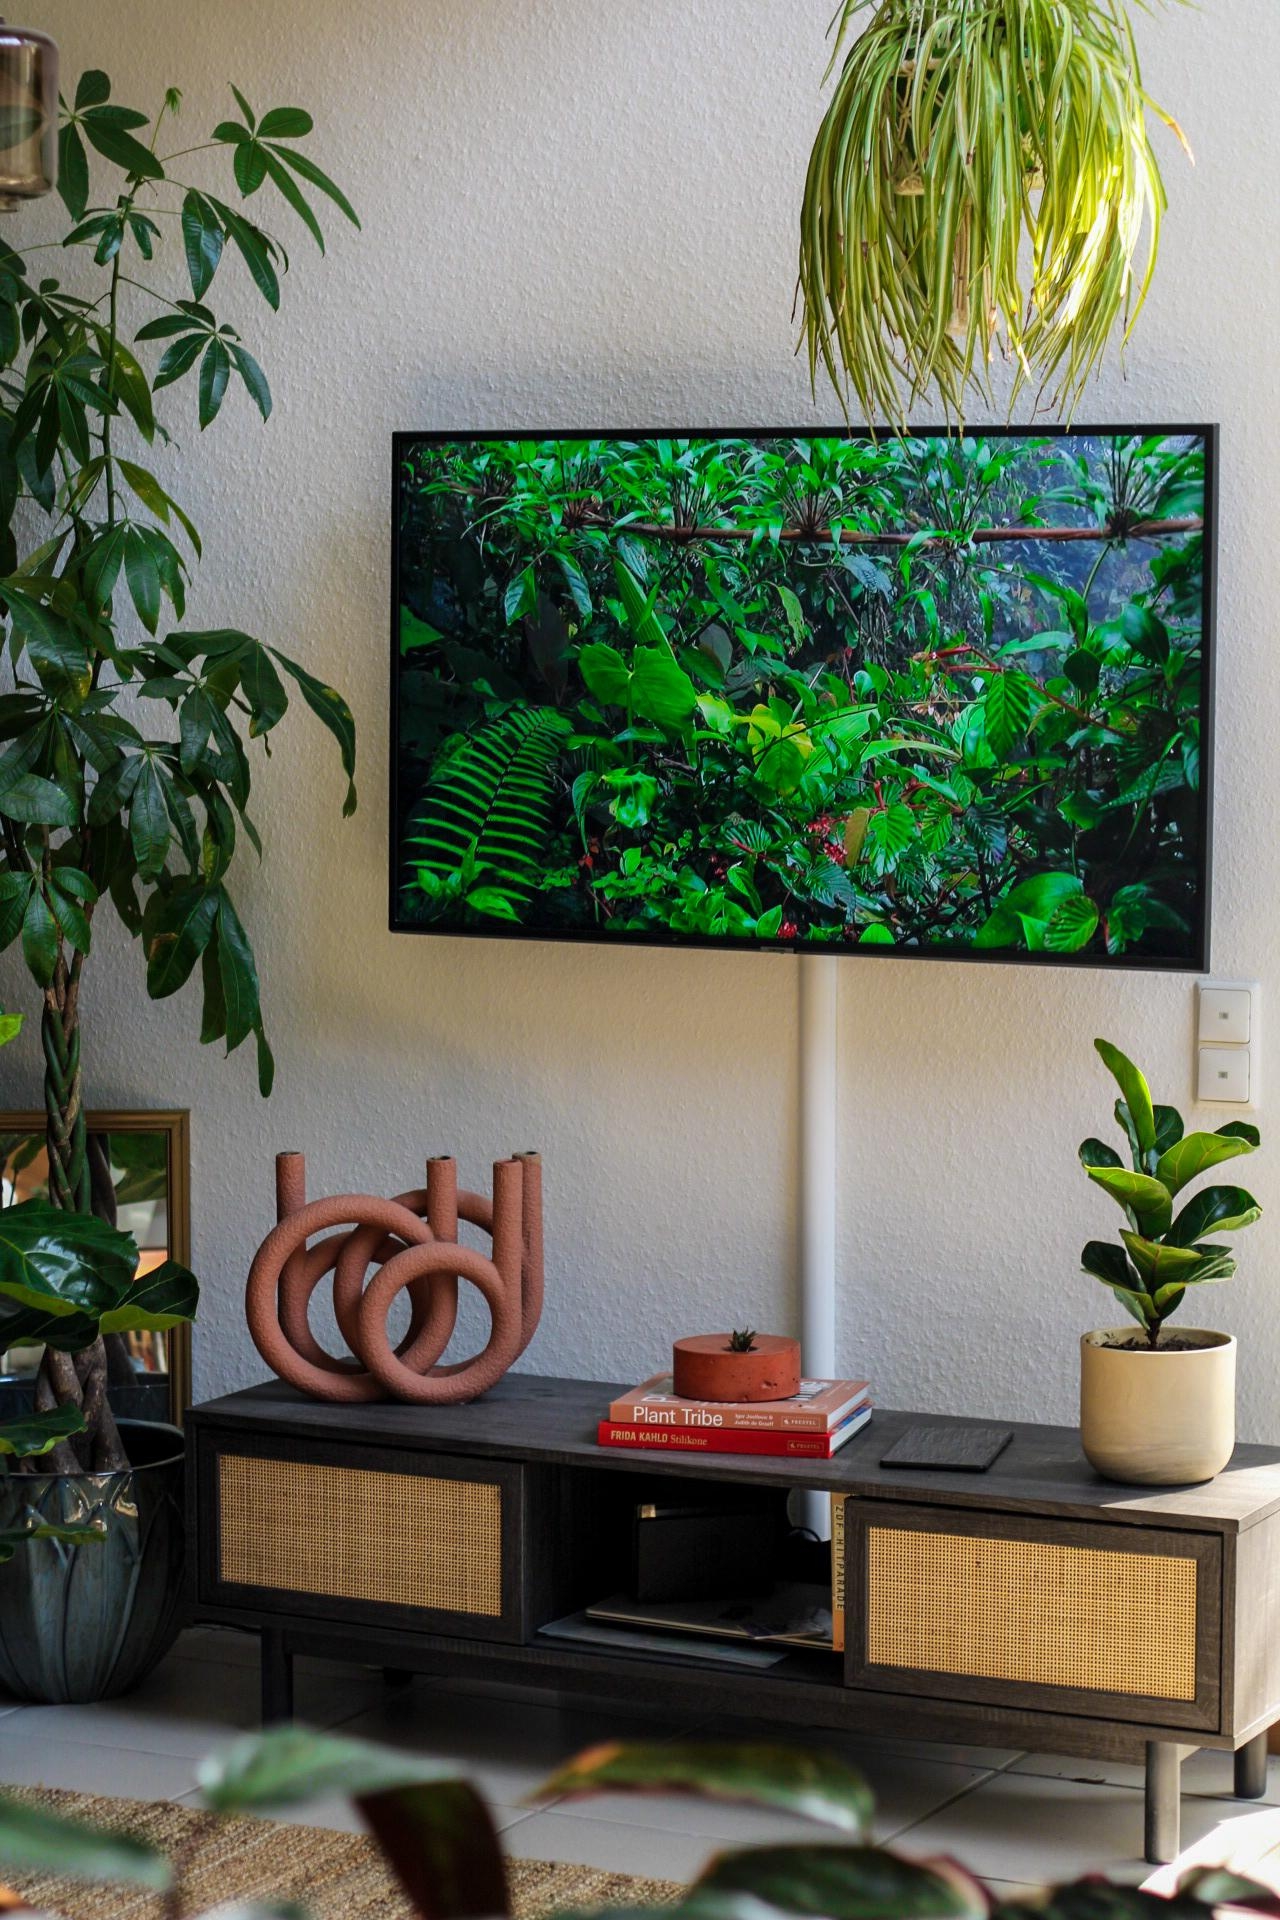 #TV
#Wohnzimmerdeko
#Wohnzimmer
#Wohnzimmergestaltung
#urbanjungle
#pflanzen